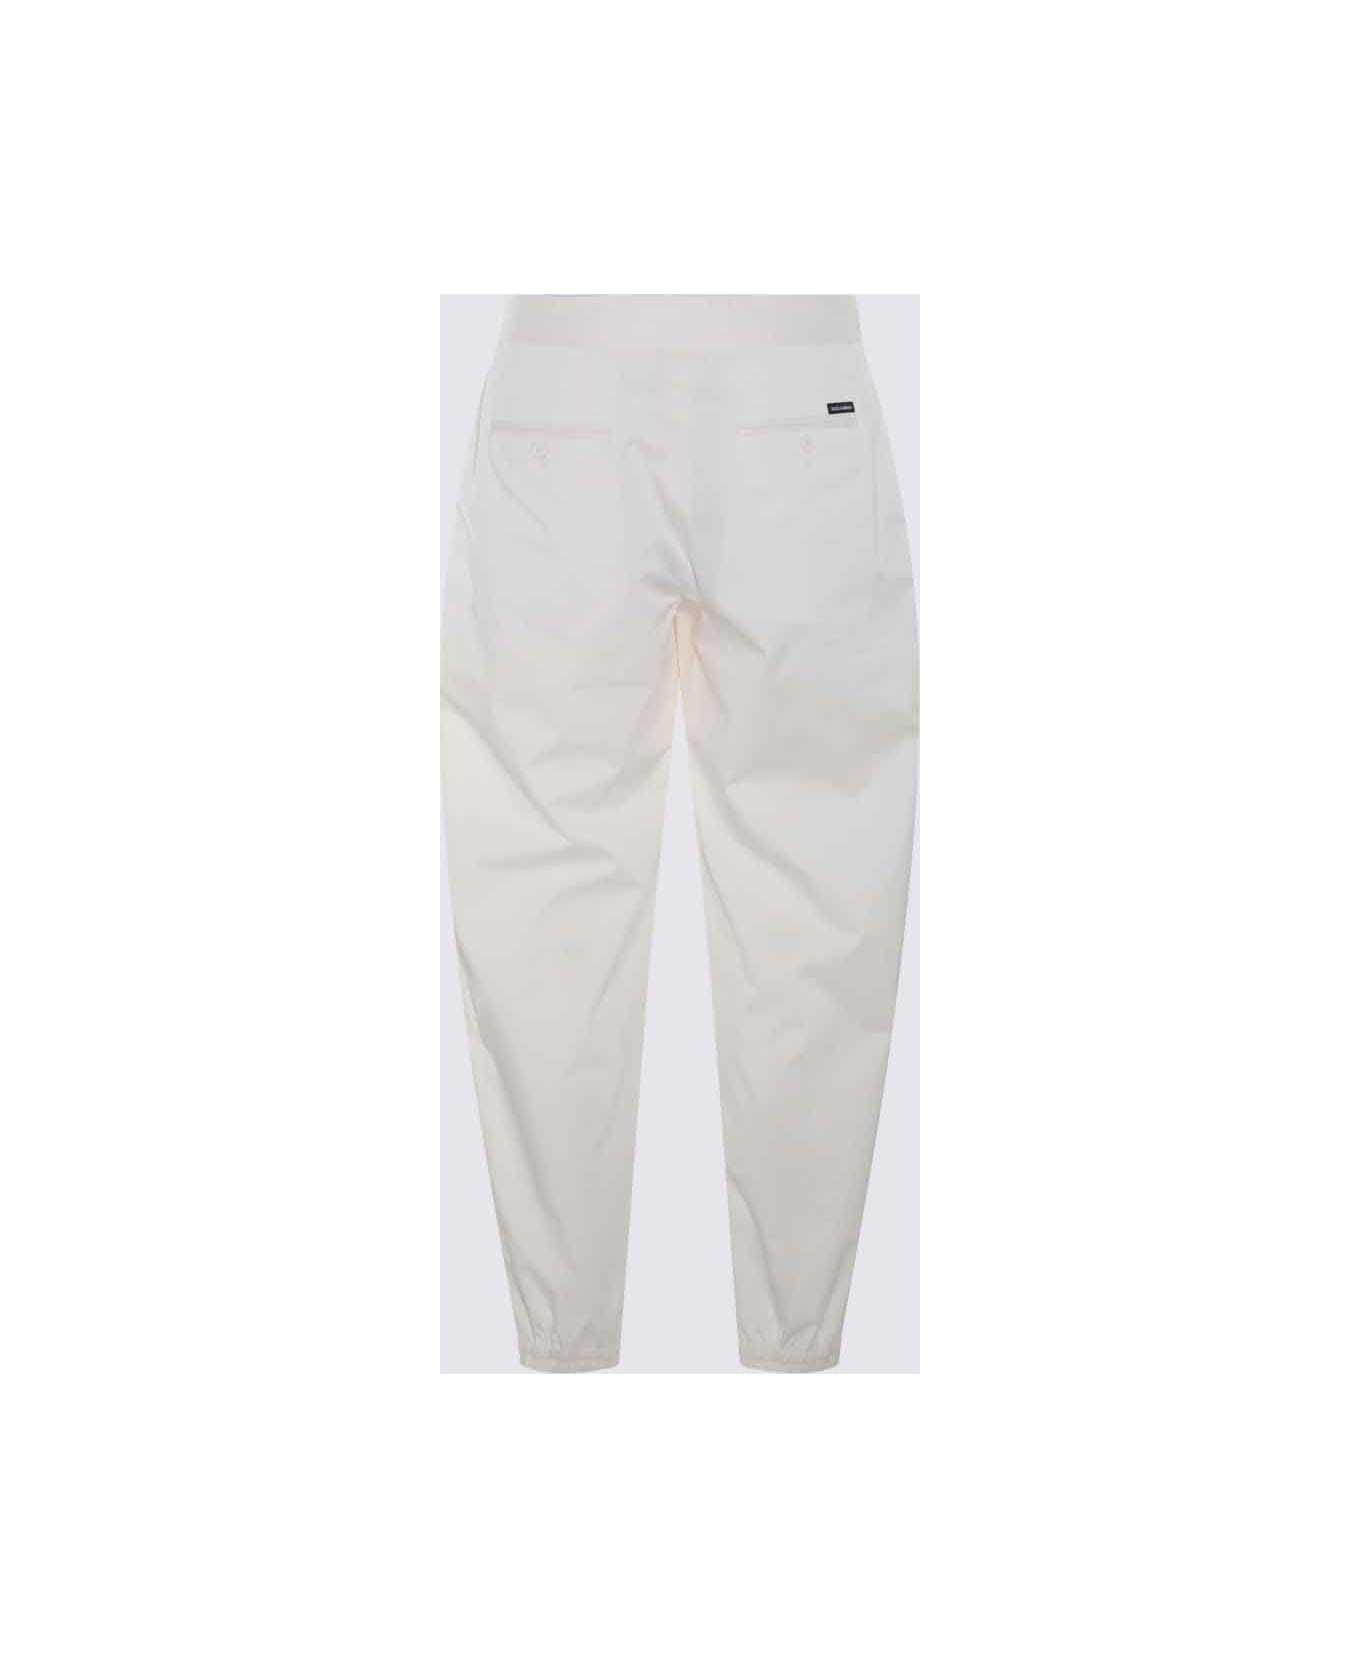 Dolce & Gabbana Cream Cotton Pants - White スウェットパンツ